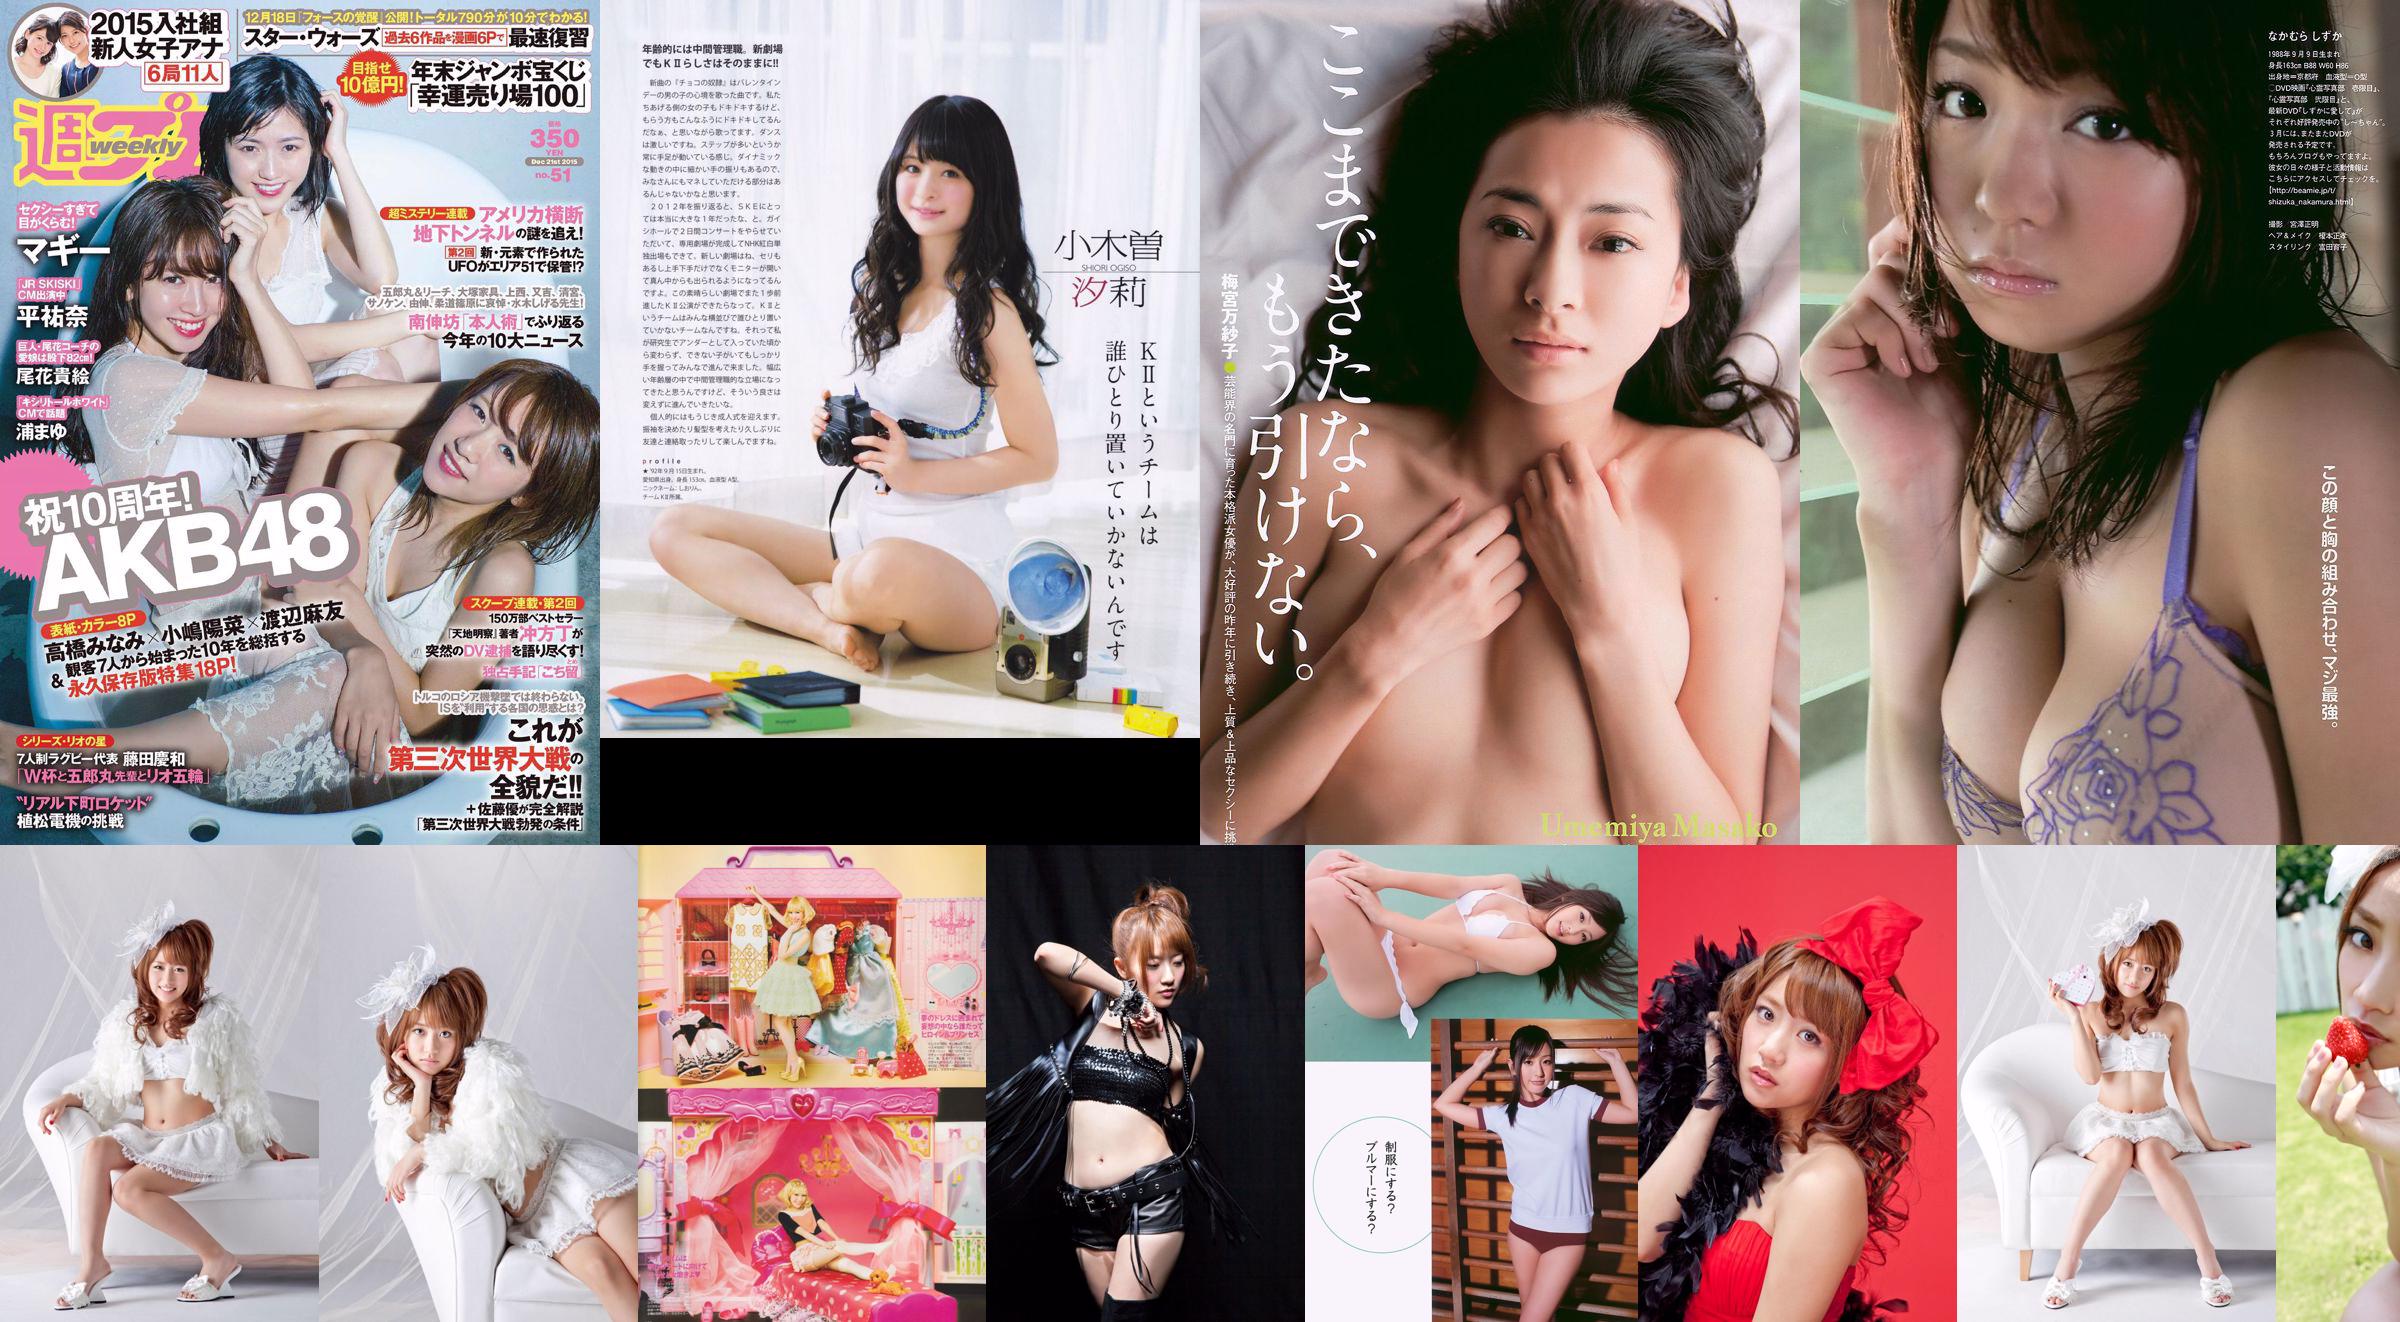 Minami Takahashi Haruna Kojima Mayu Watanabe Maggie Takae Obana Yuna Taira Mayu Ura Mitadera En [Weekly Playboy] 2015 No.51 Photo No.70a4c8 Page 3